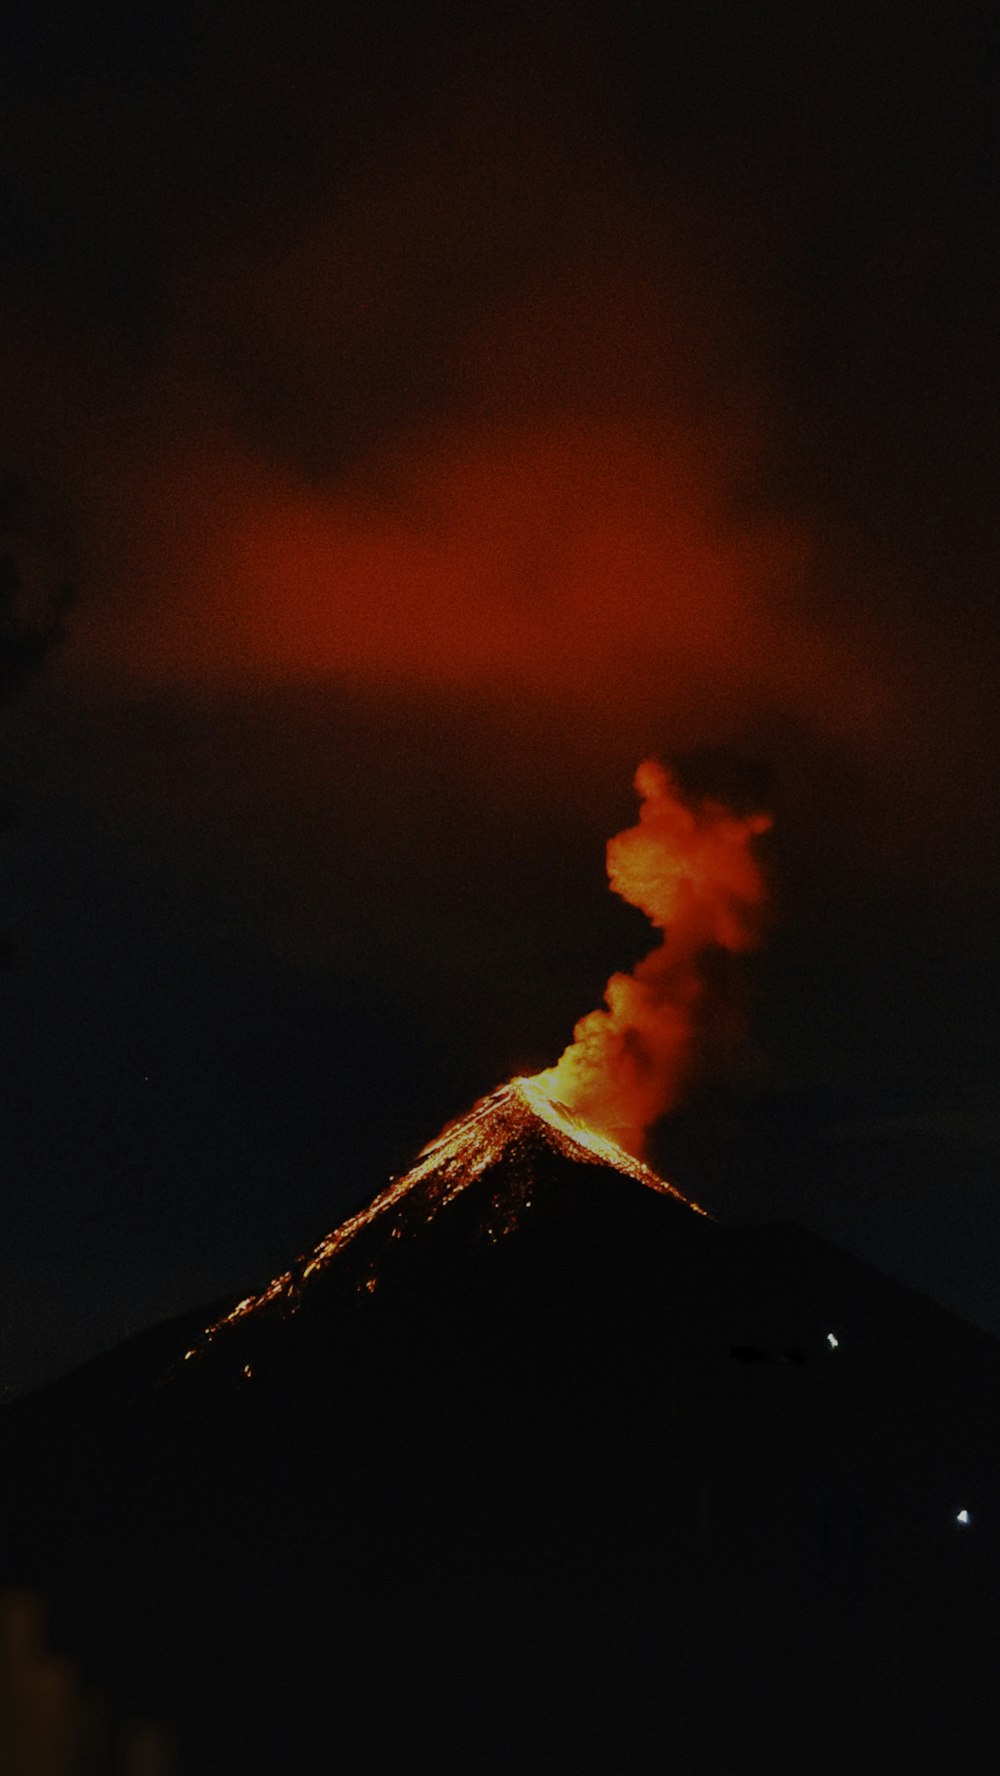 um vulcão irrompe fumaça quando entra em erupção no céu noturno